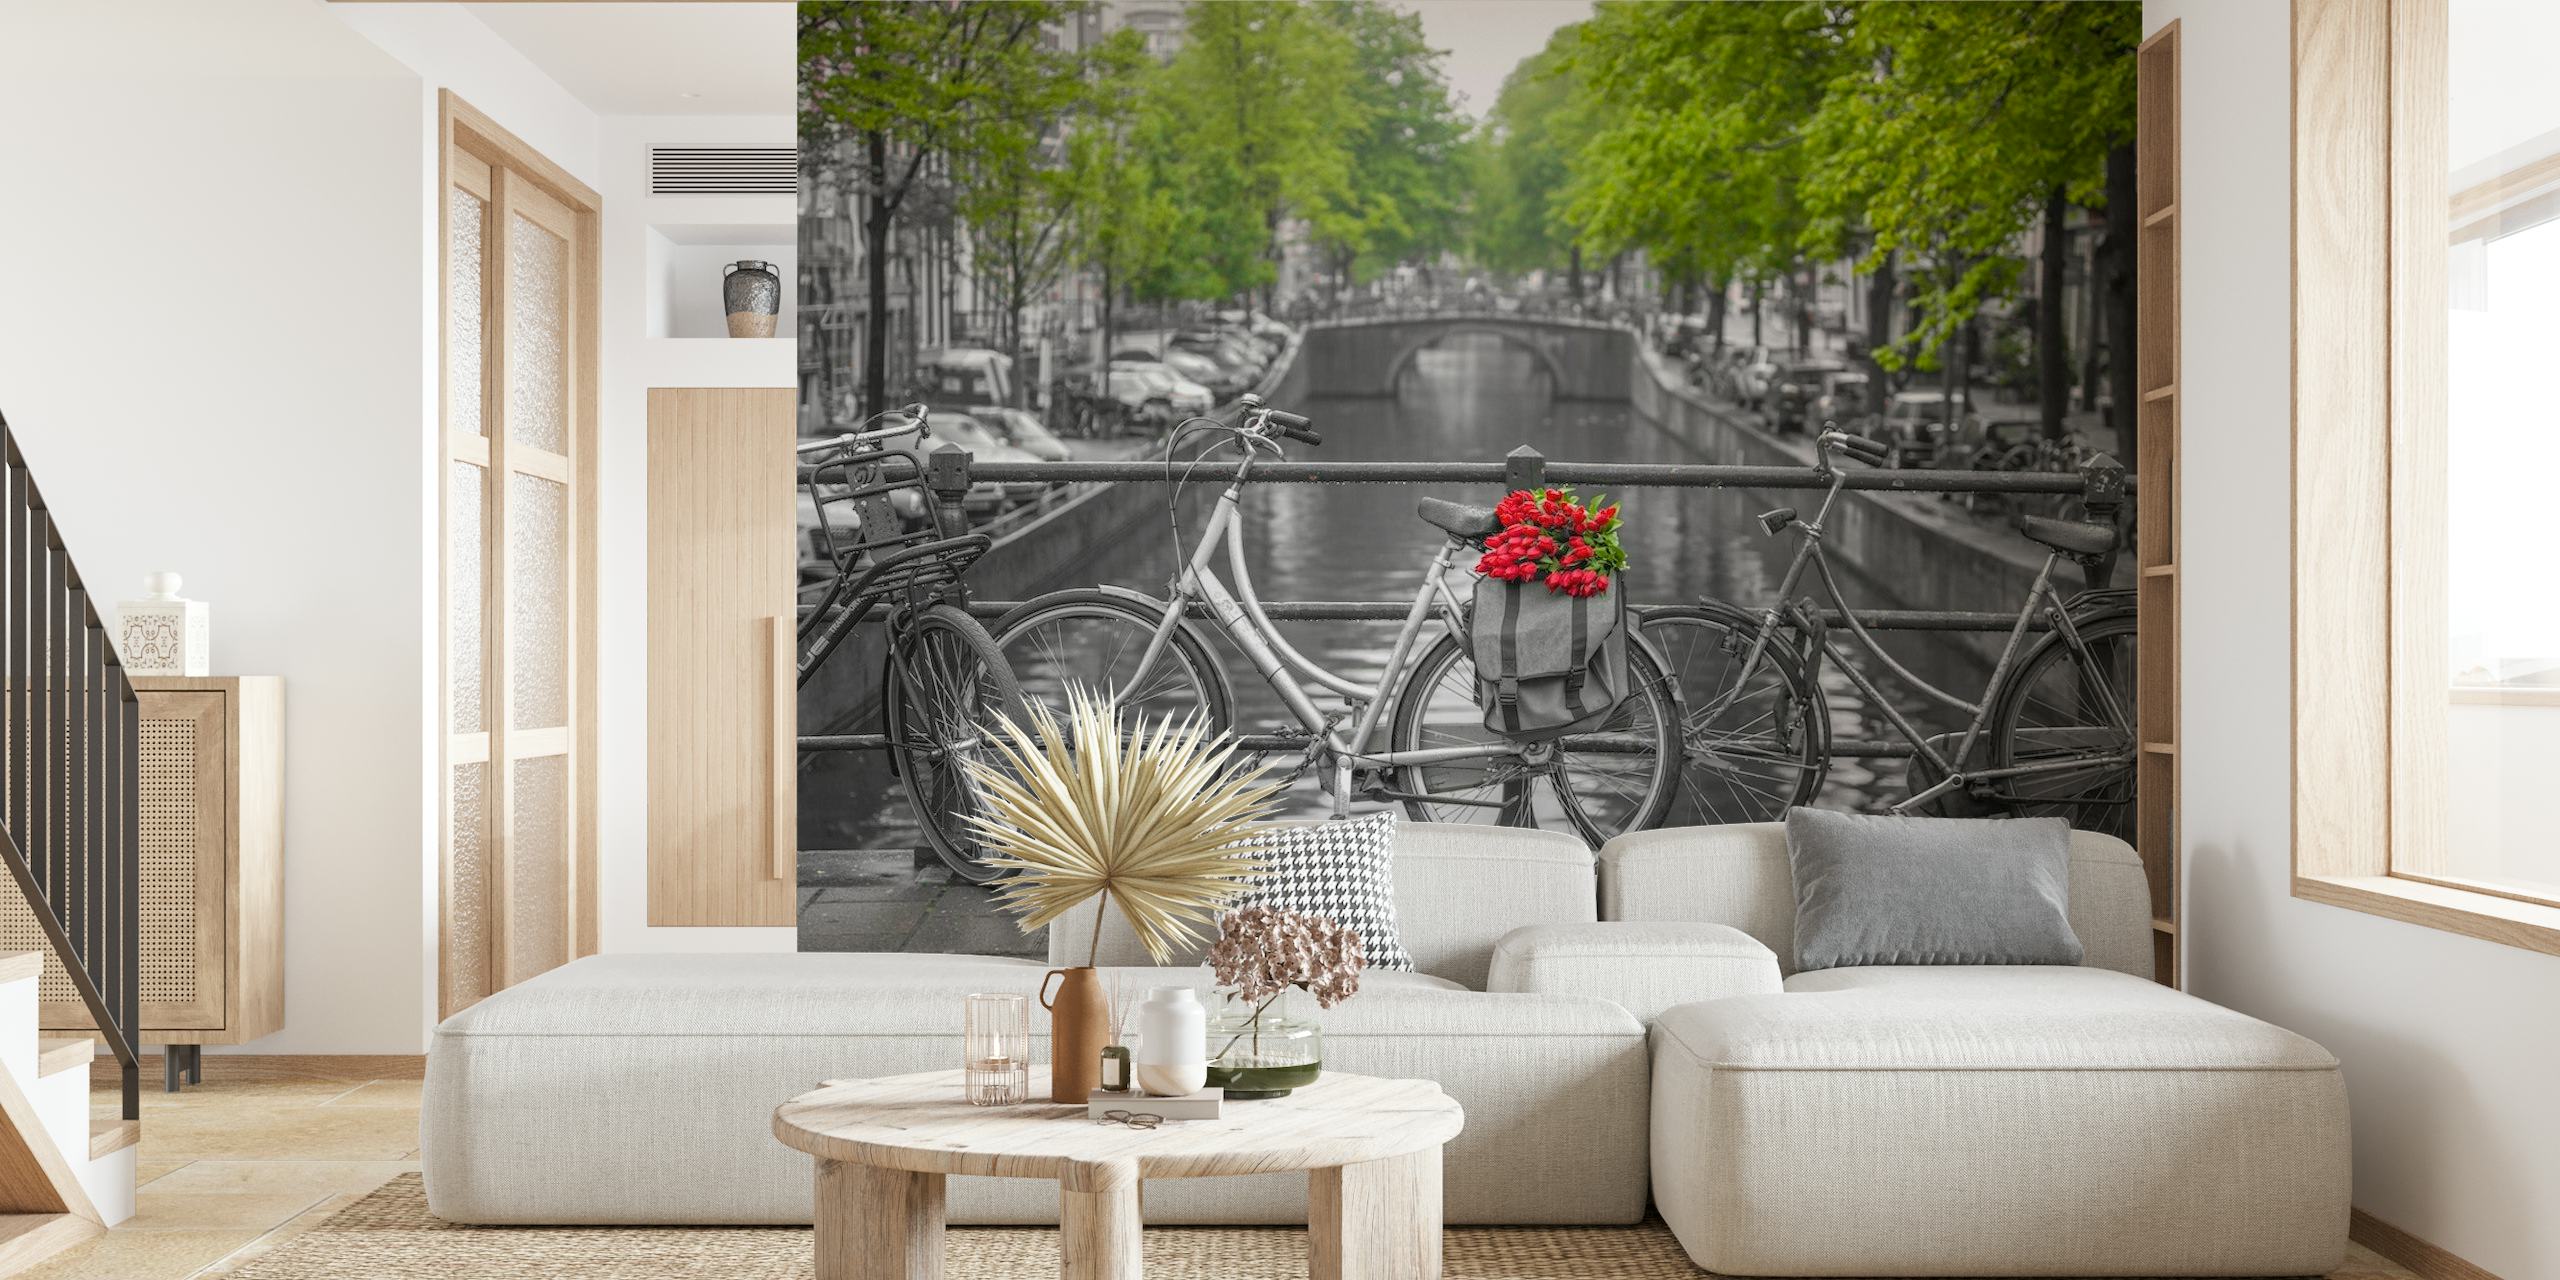 Amsterdamski kanal s biciklima i zidnim muralom s ukrasima crvenog cvijeća